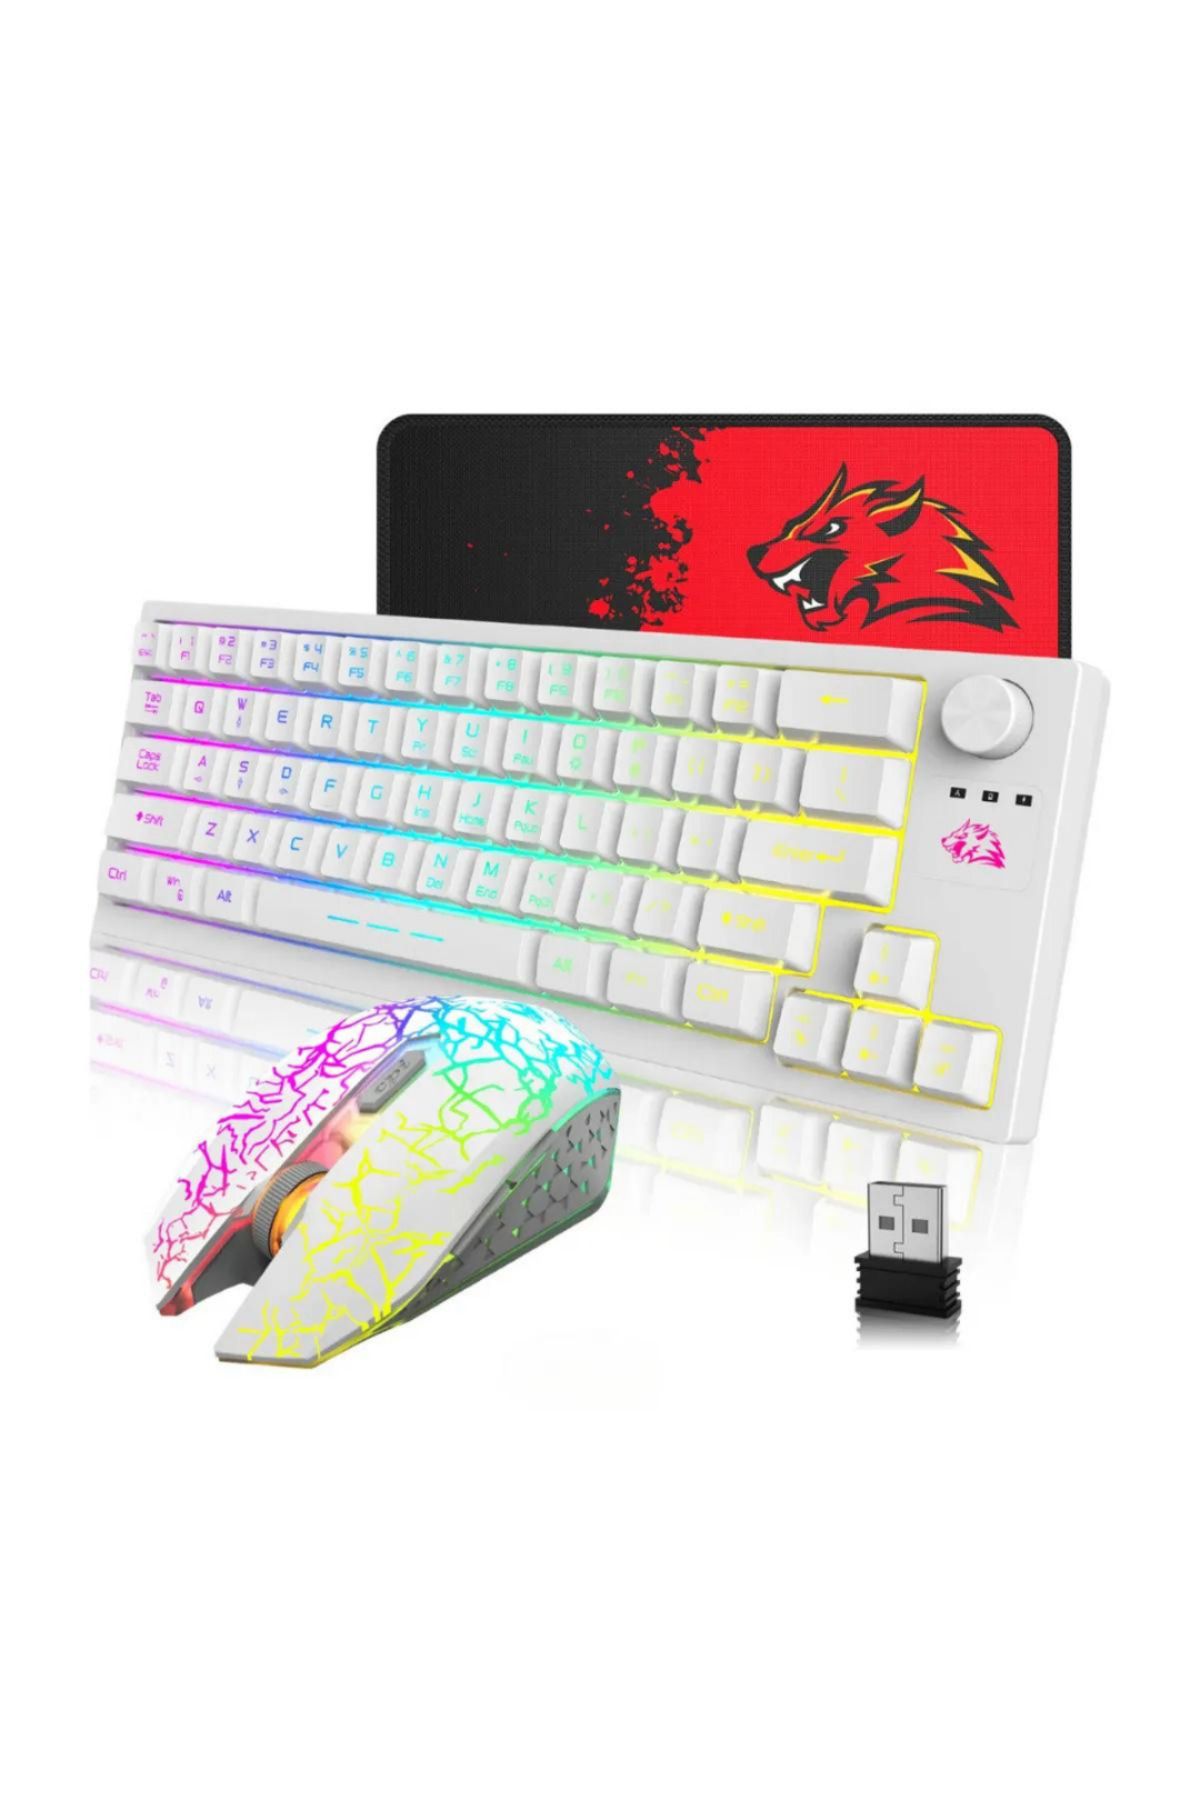 XİRA T50 Kablosuz Işıklı Klavye Mouse Rainbow Aydınlatmalı Mekanik Hisli Mousepad Hediyeli